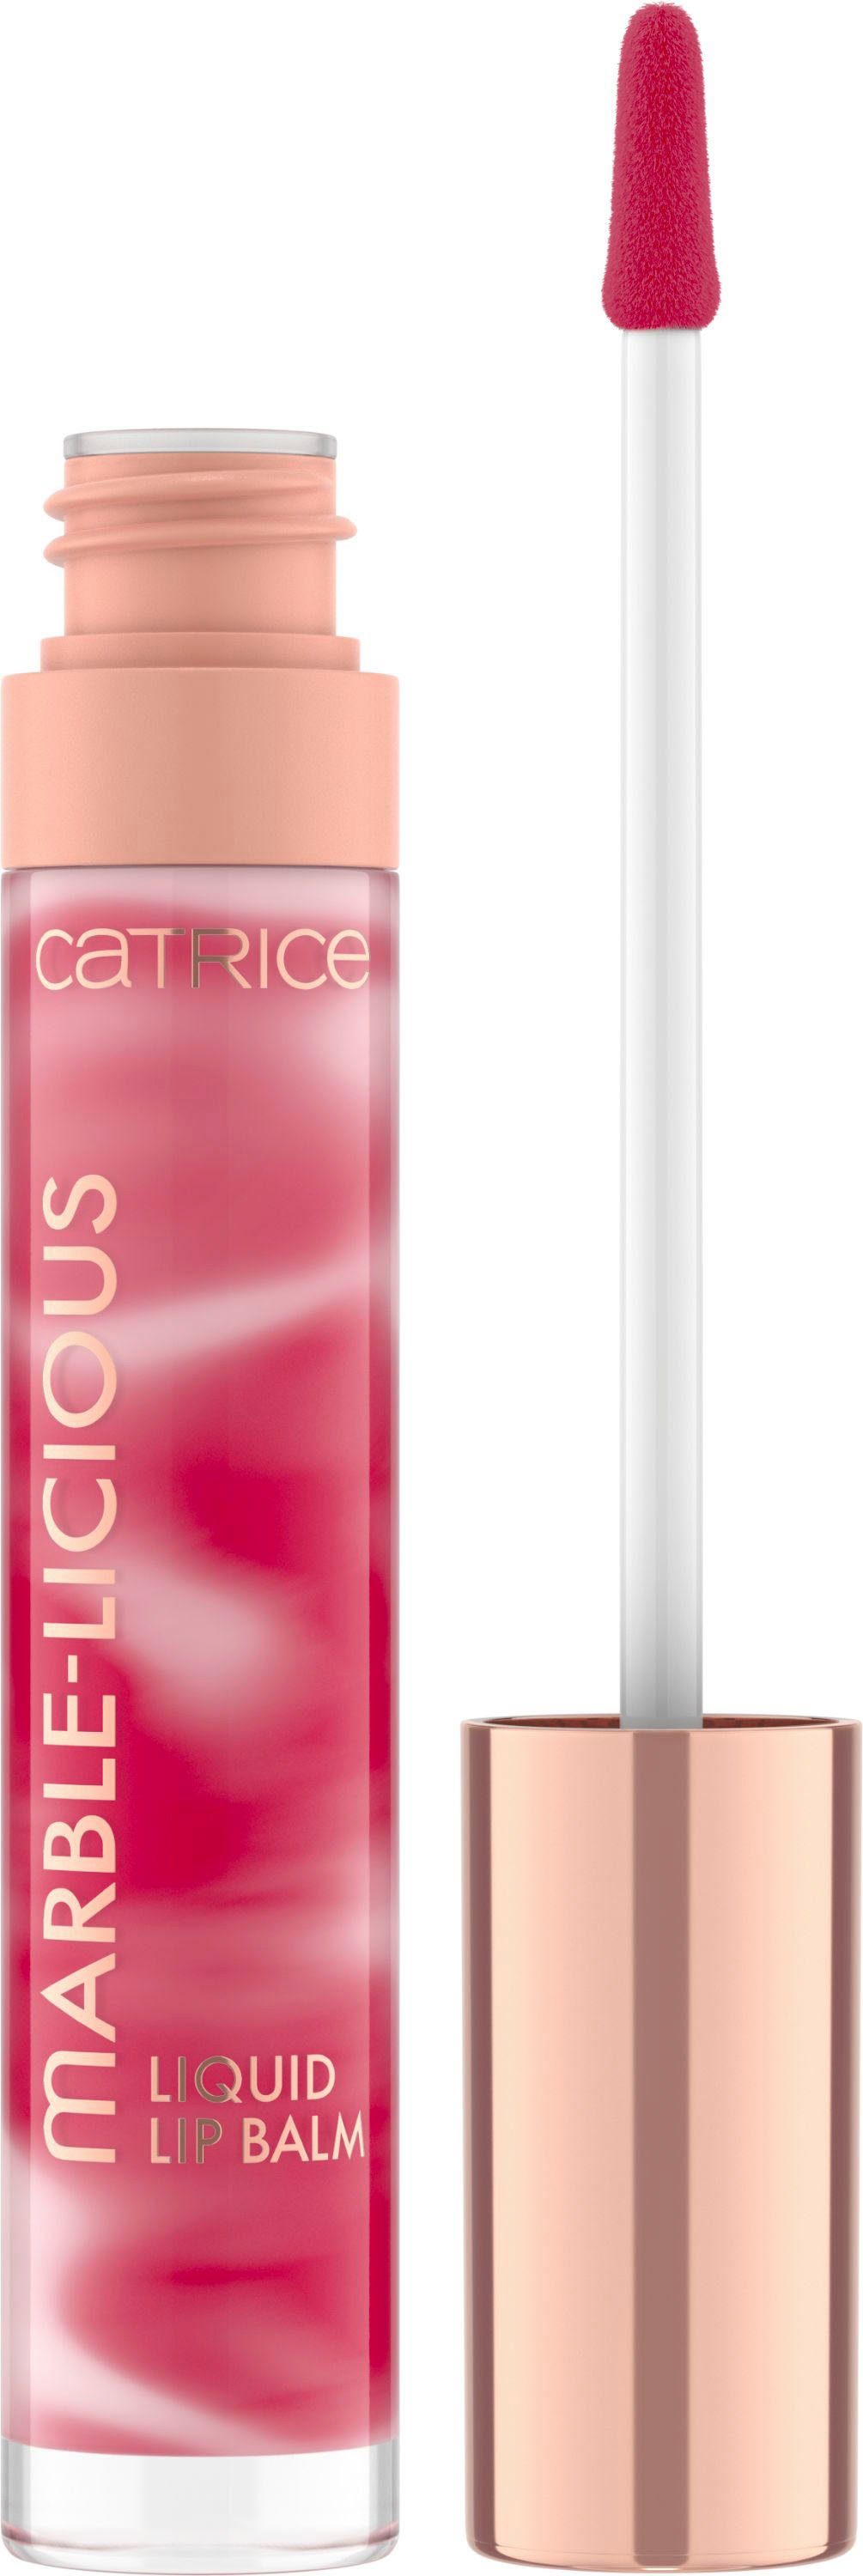 Catrice Lipgloss Marble-licious Liquid Lip Balm,